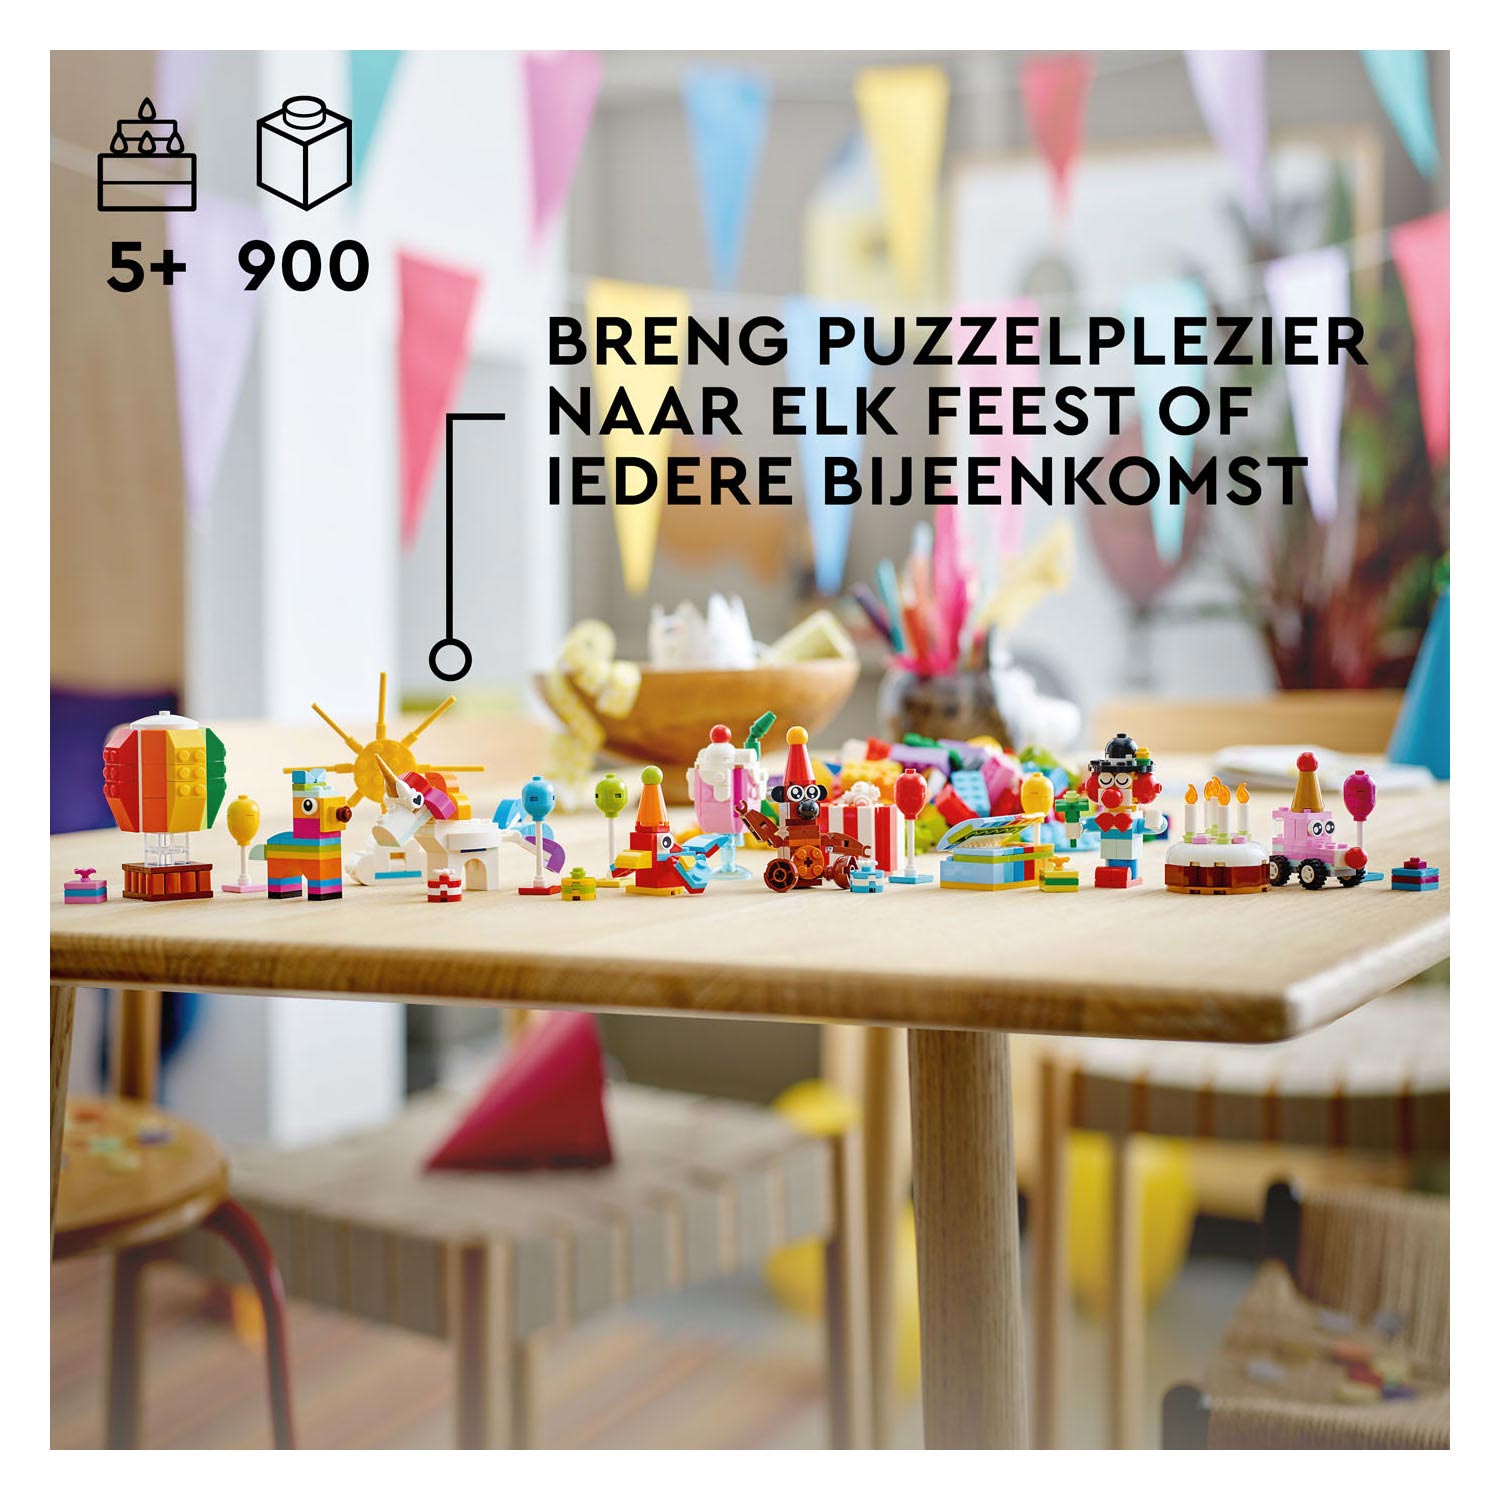 LEGO Classic 11029 Ensemble de fête créative